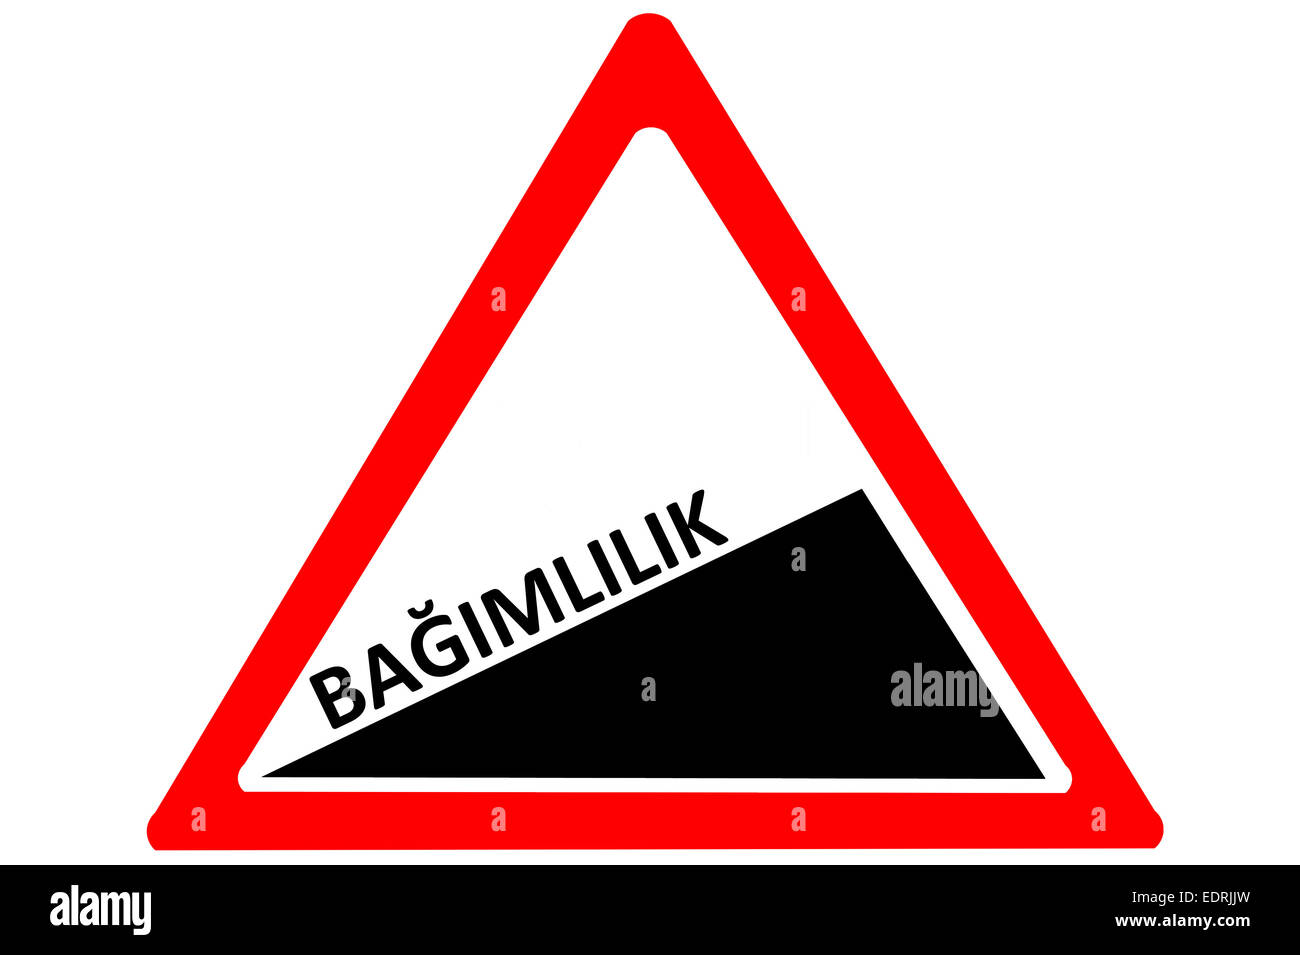 Addiction Turkish bagimlilik increasing warning road sign isolated on white background Stock Photo